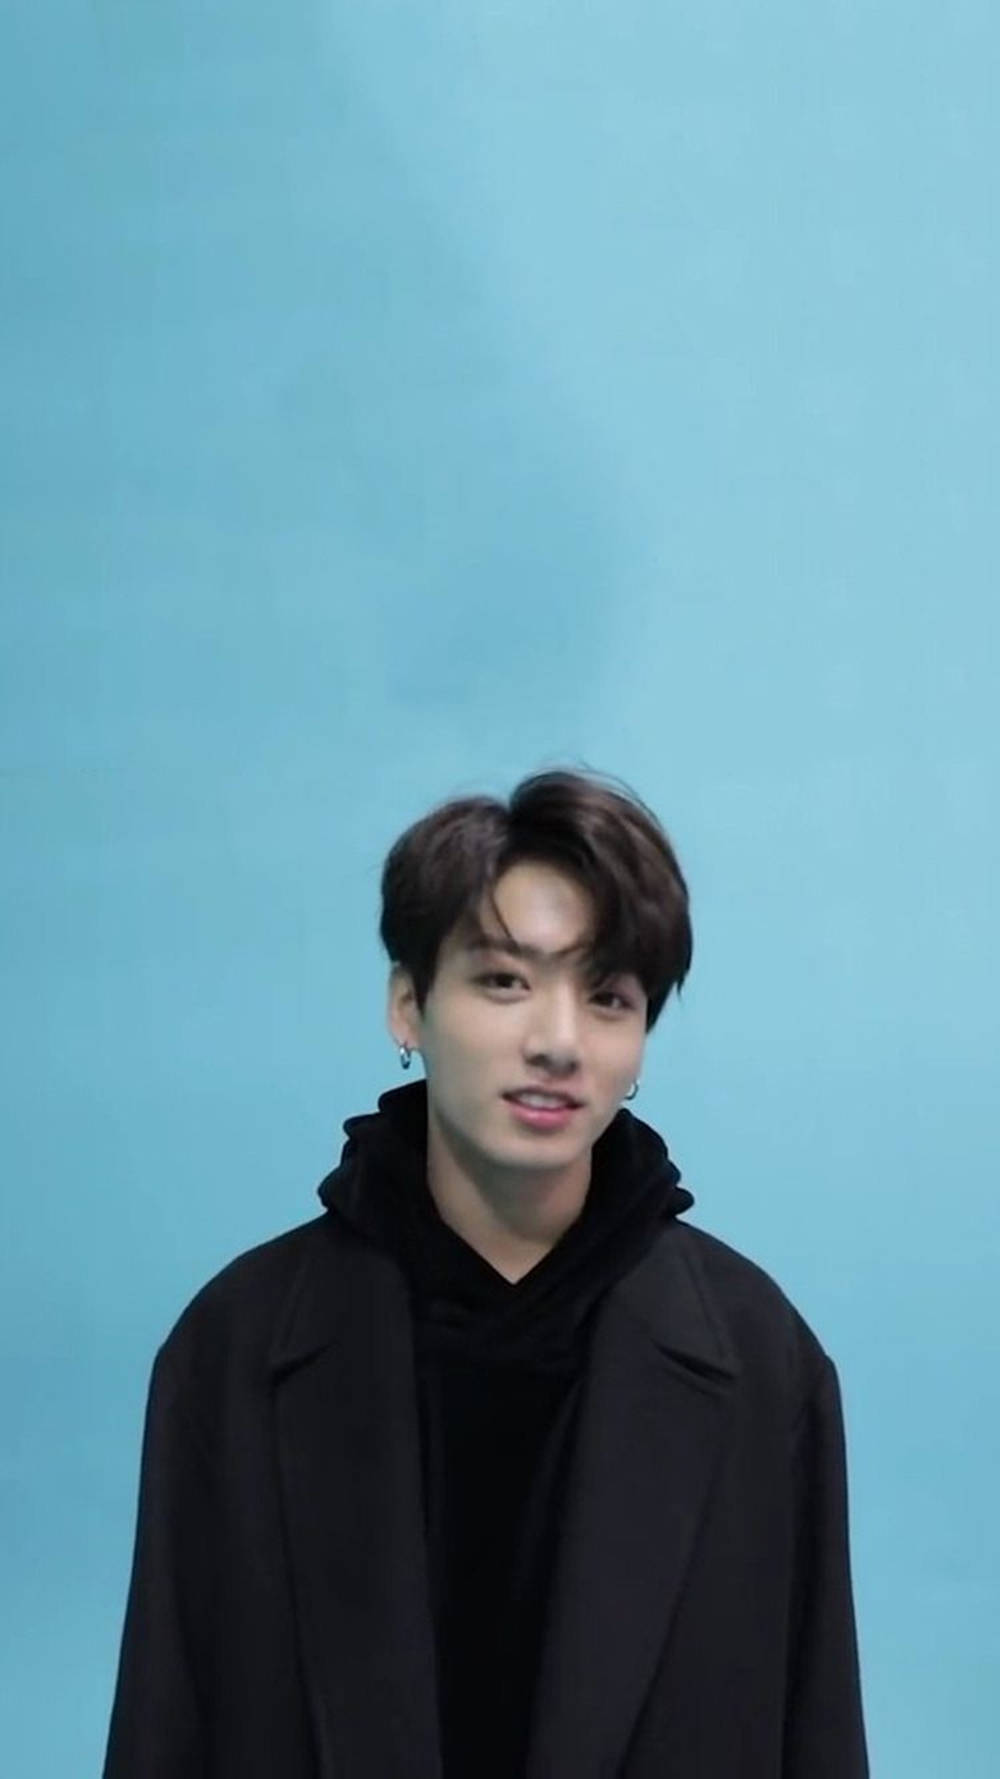 Handsome BTS JK Portrait Over Pastel Blue Wallpaper